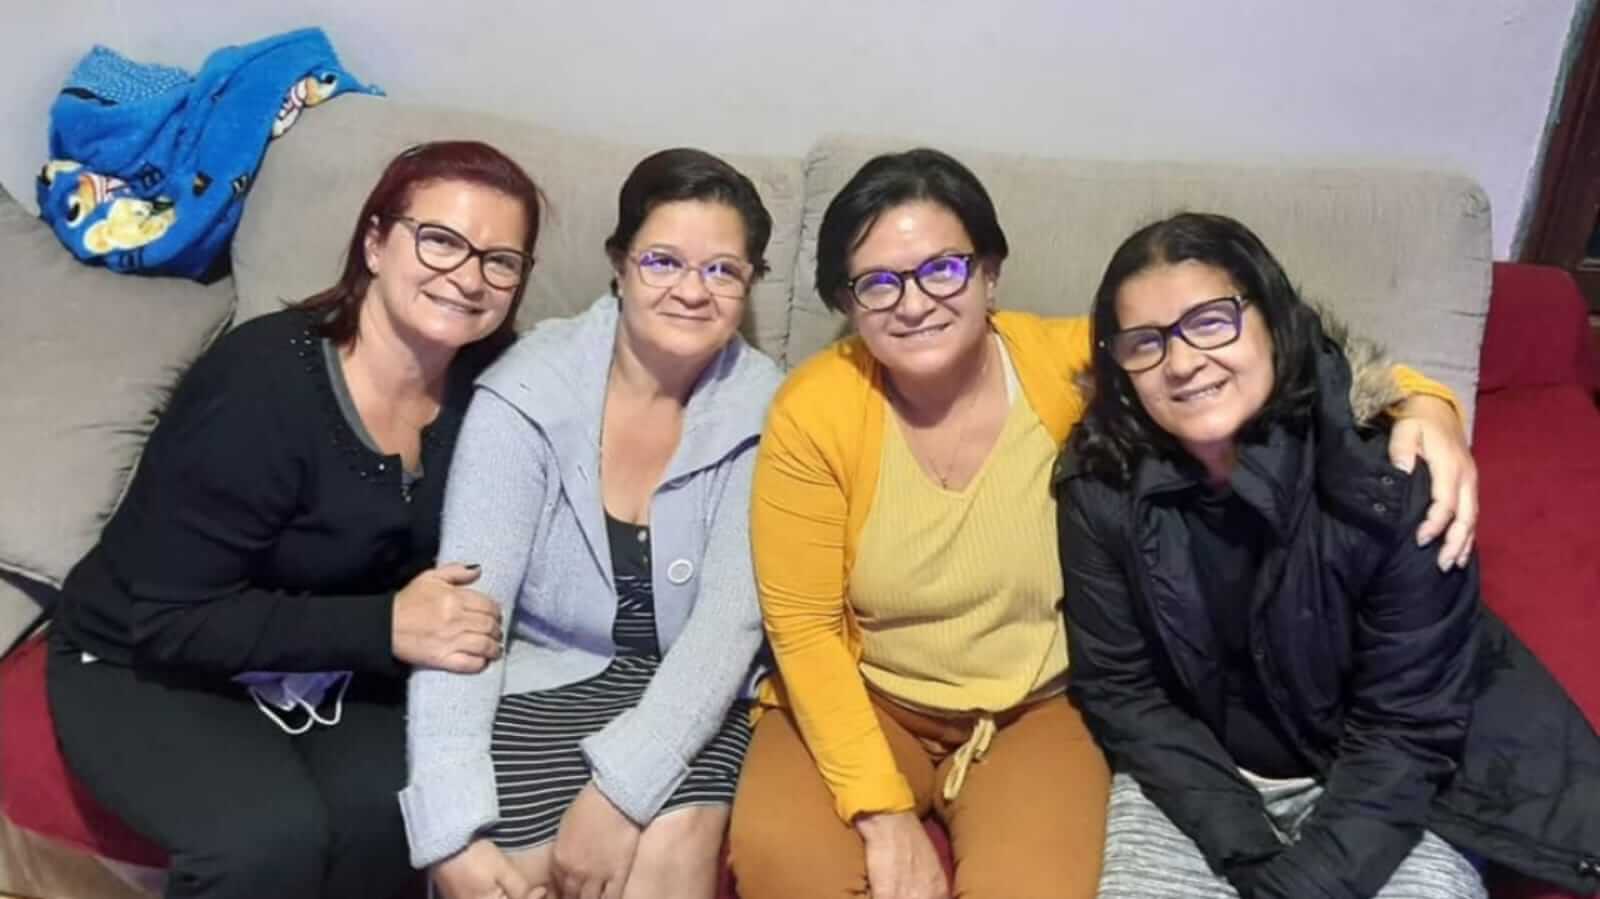 Quatro mulheres sentadas em sofá